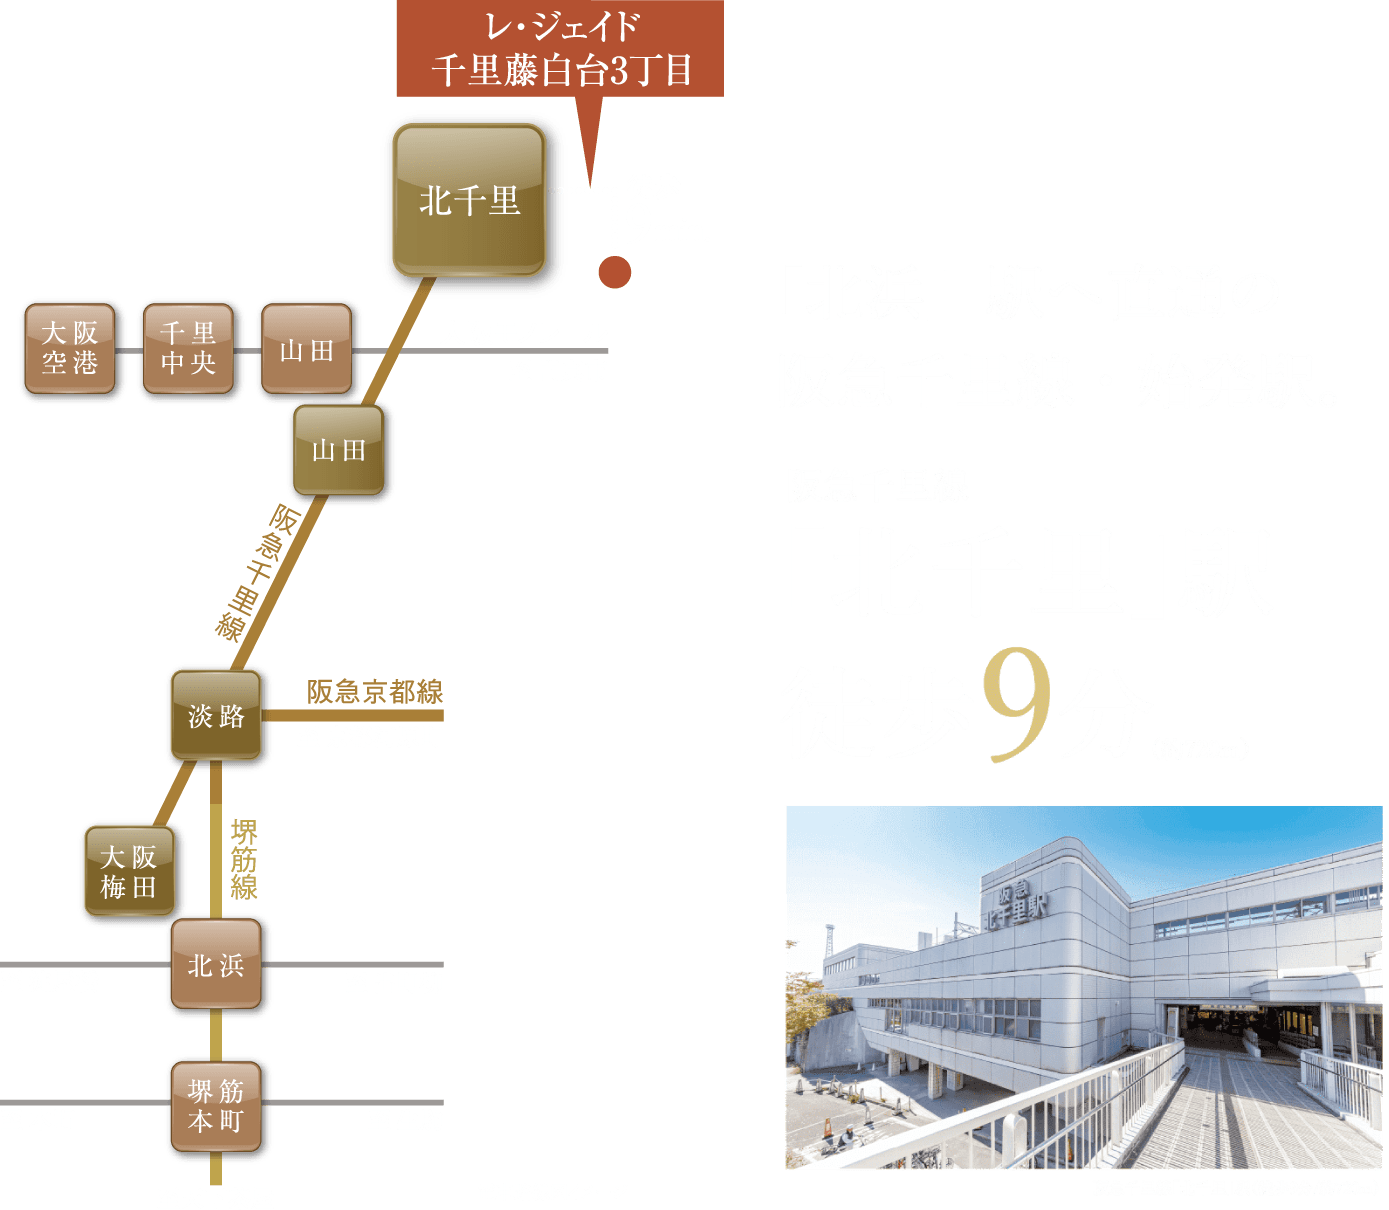 「北浜」駅へ直通の阪急千里線・始発駅。